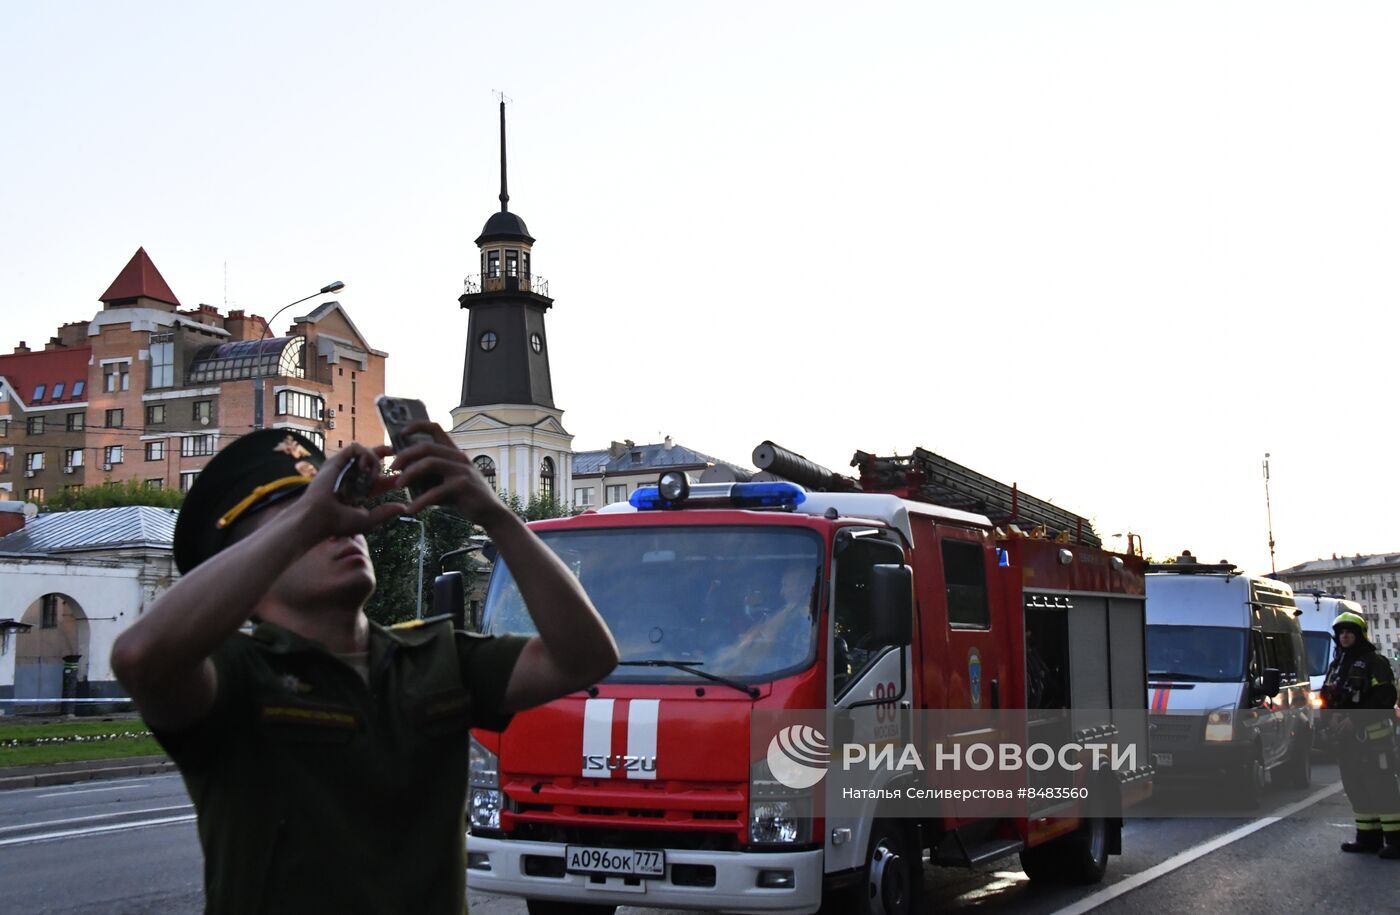 وقائع الهجوم الأوكراني الفاشل بمسيرتين على موسكو (فيديو+صور)